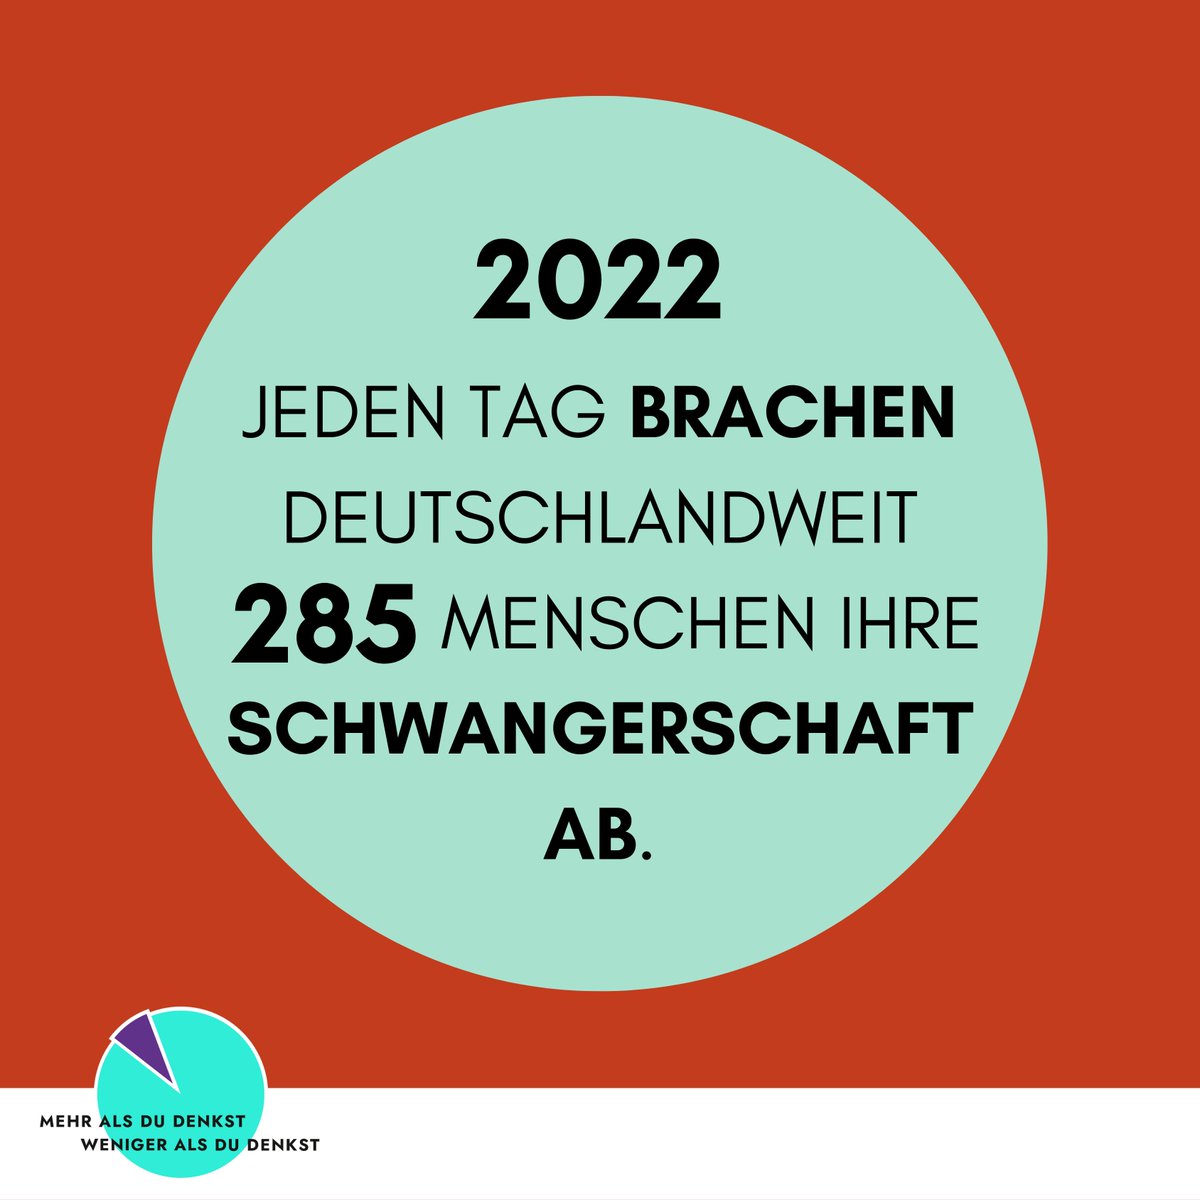 2022 wurden in #Deutschland 103.927 Schwangerschaftsabbrüche durchgeführt. Bei 365 Tagen im Jahr sind das 285 Abbrüche pro Tag. Das entspricht einem #Schwangerschaftsabbruch alle fünf Minuten.